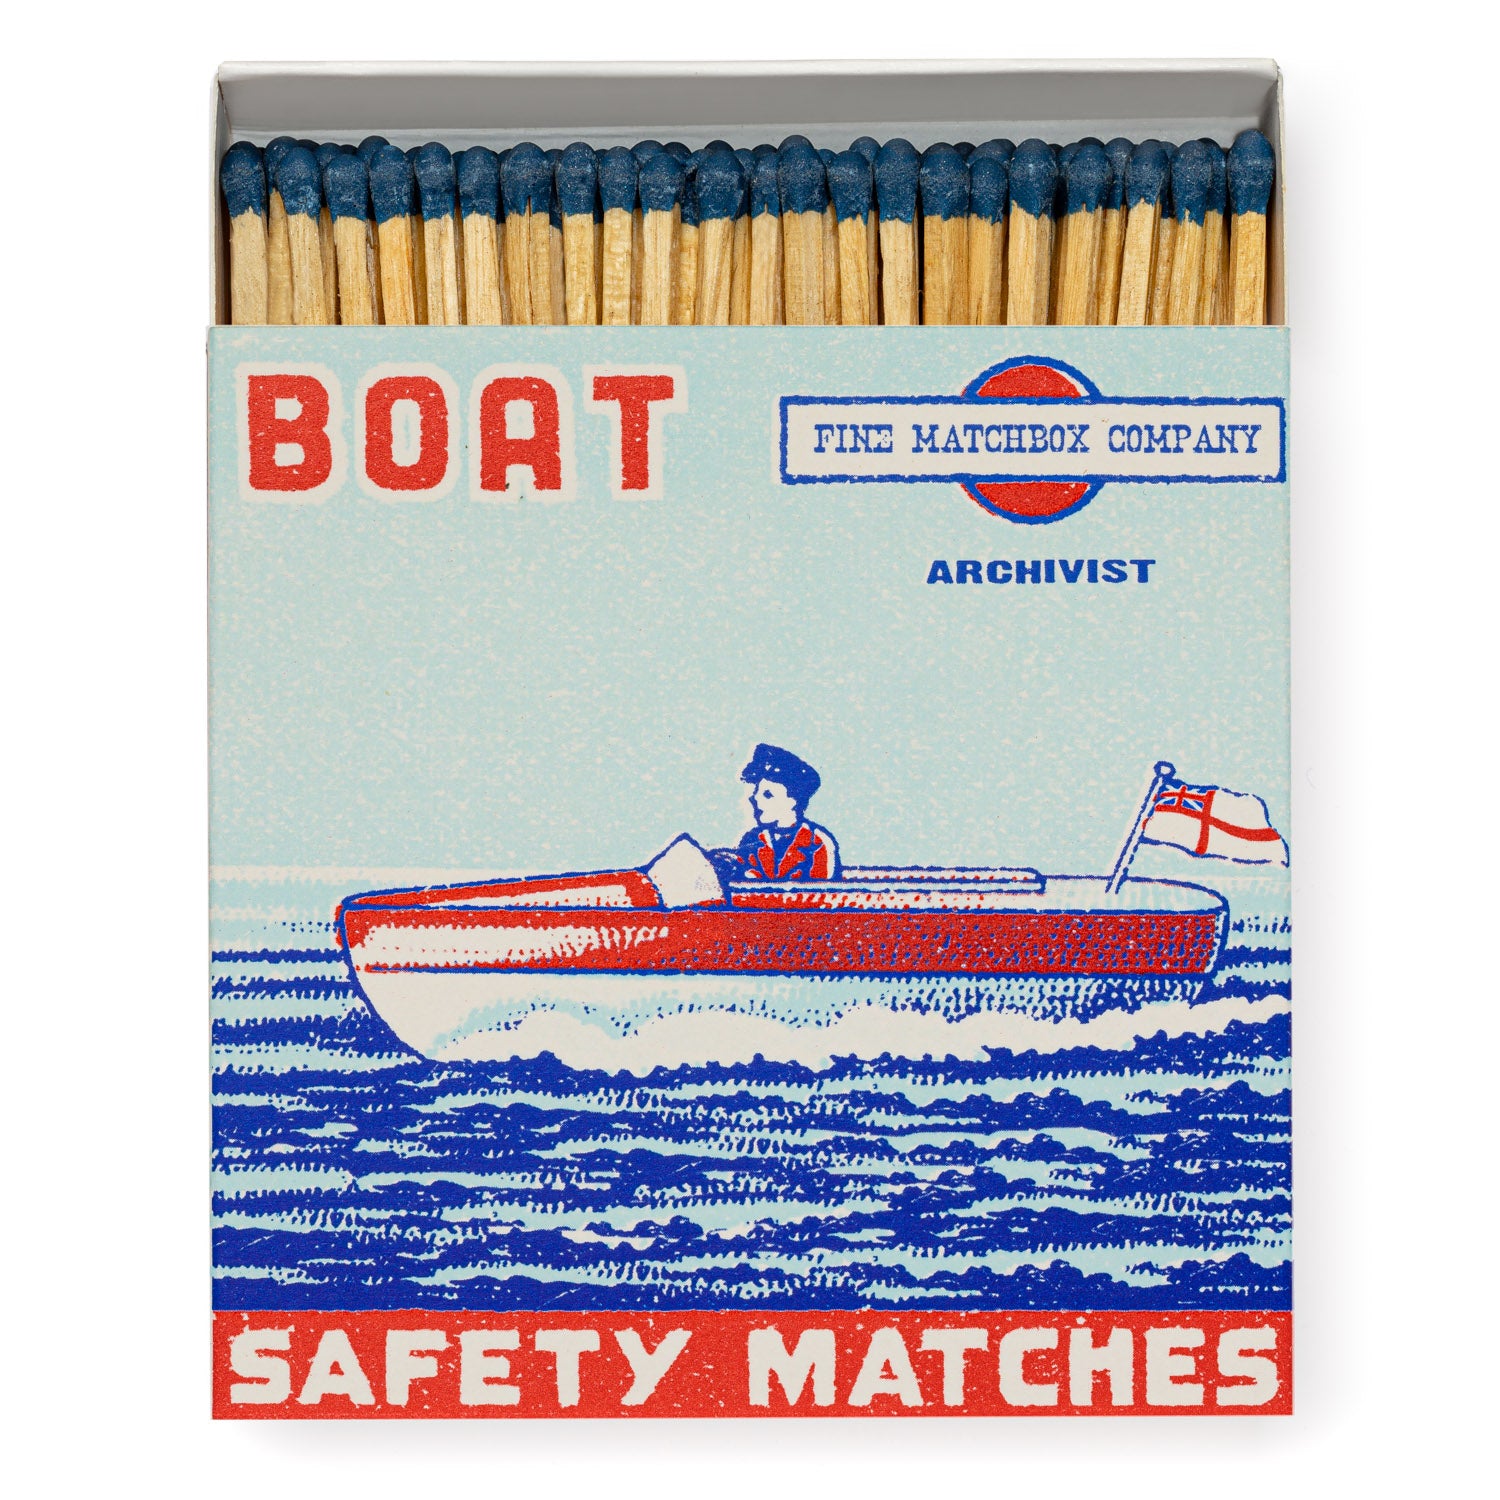 Matchbox Boat